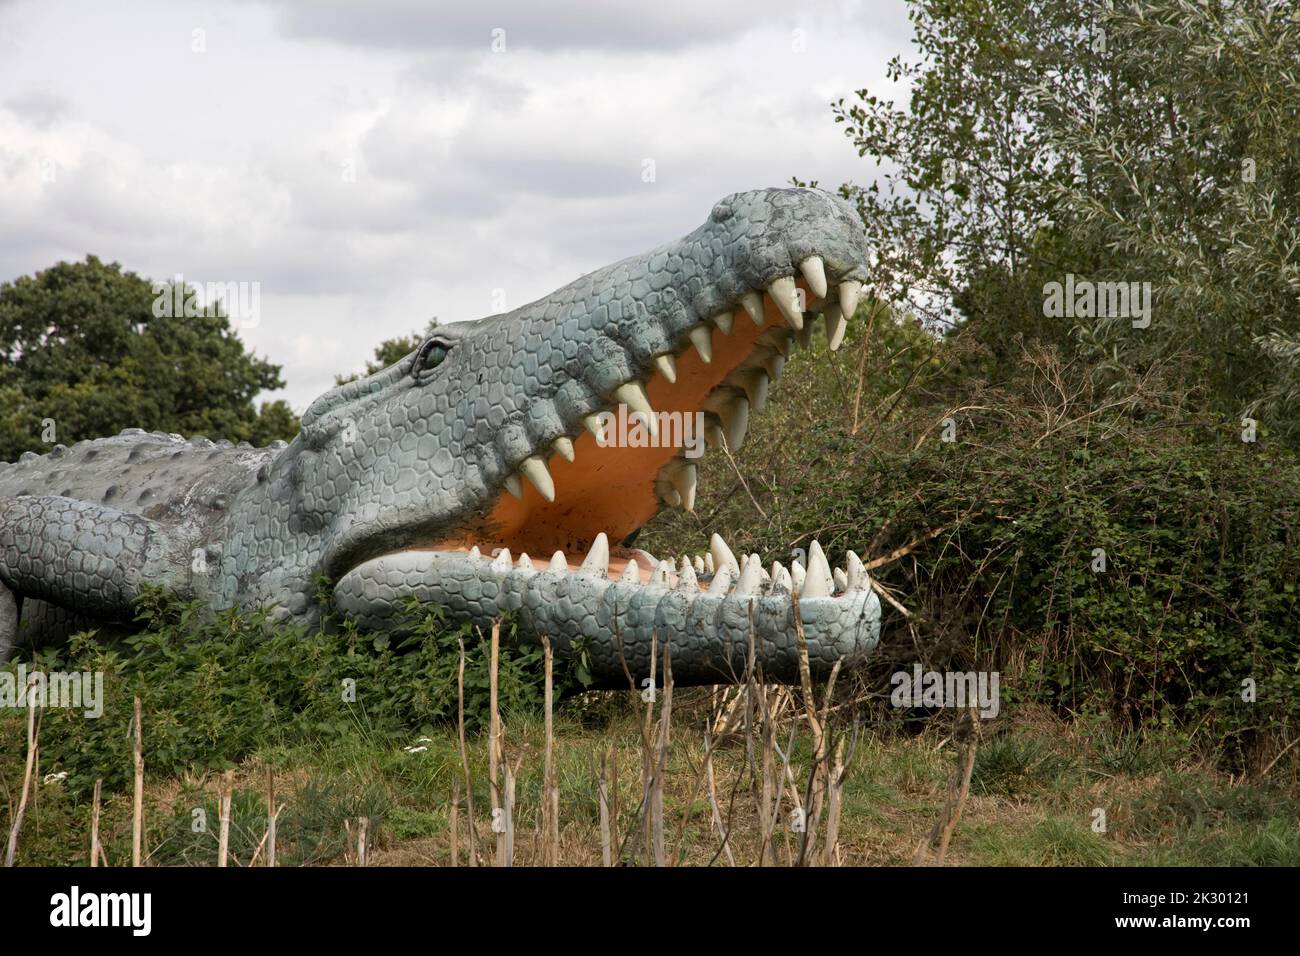 Modèle LifeSize de Deinosuchus dinosaure un genre éteint d'un crocodilien alligatoroïde All Things Wild, Honeybourne, Royaume-Uni Banque D'Images